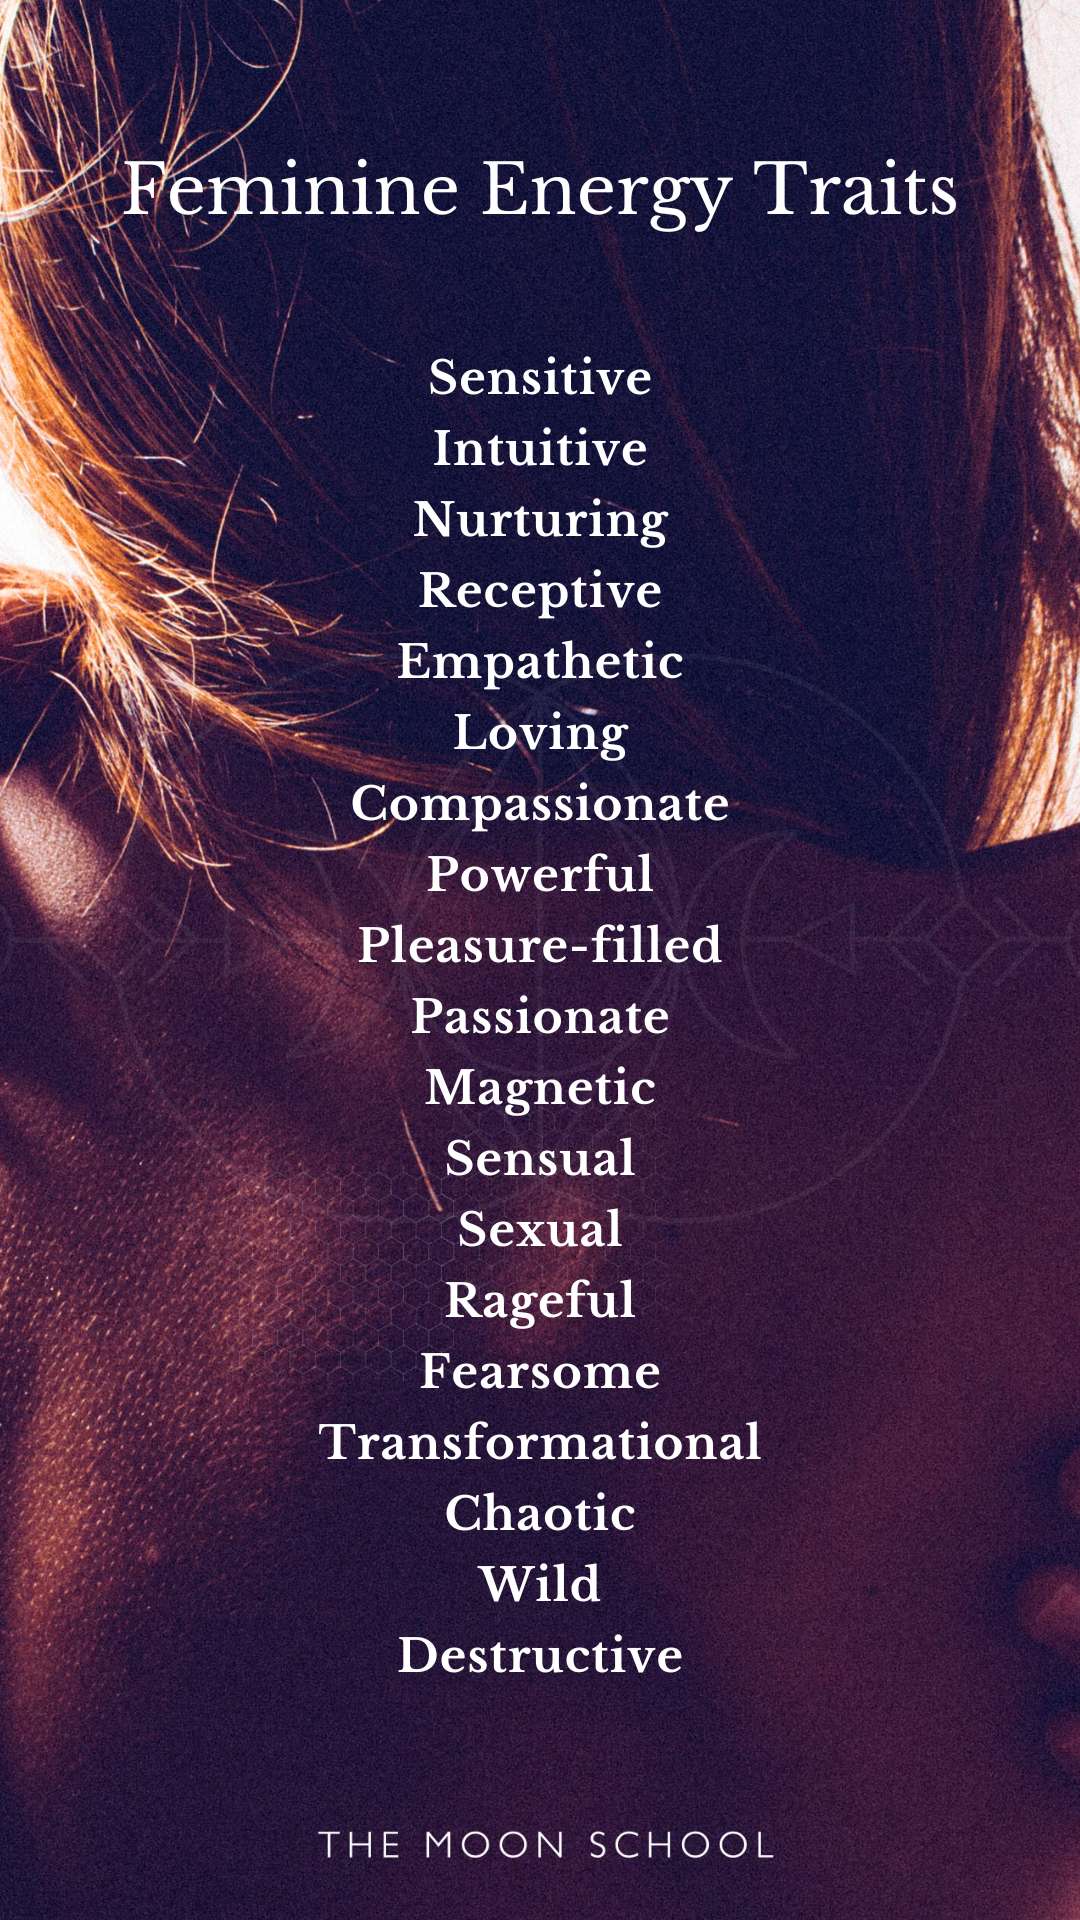 List of feminine energy traits